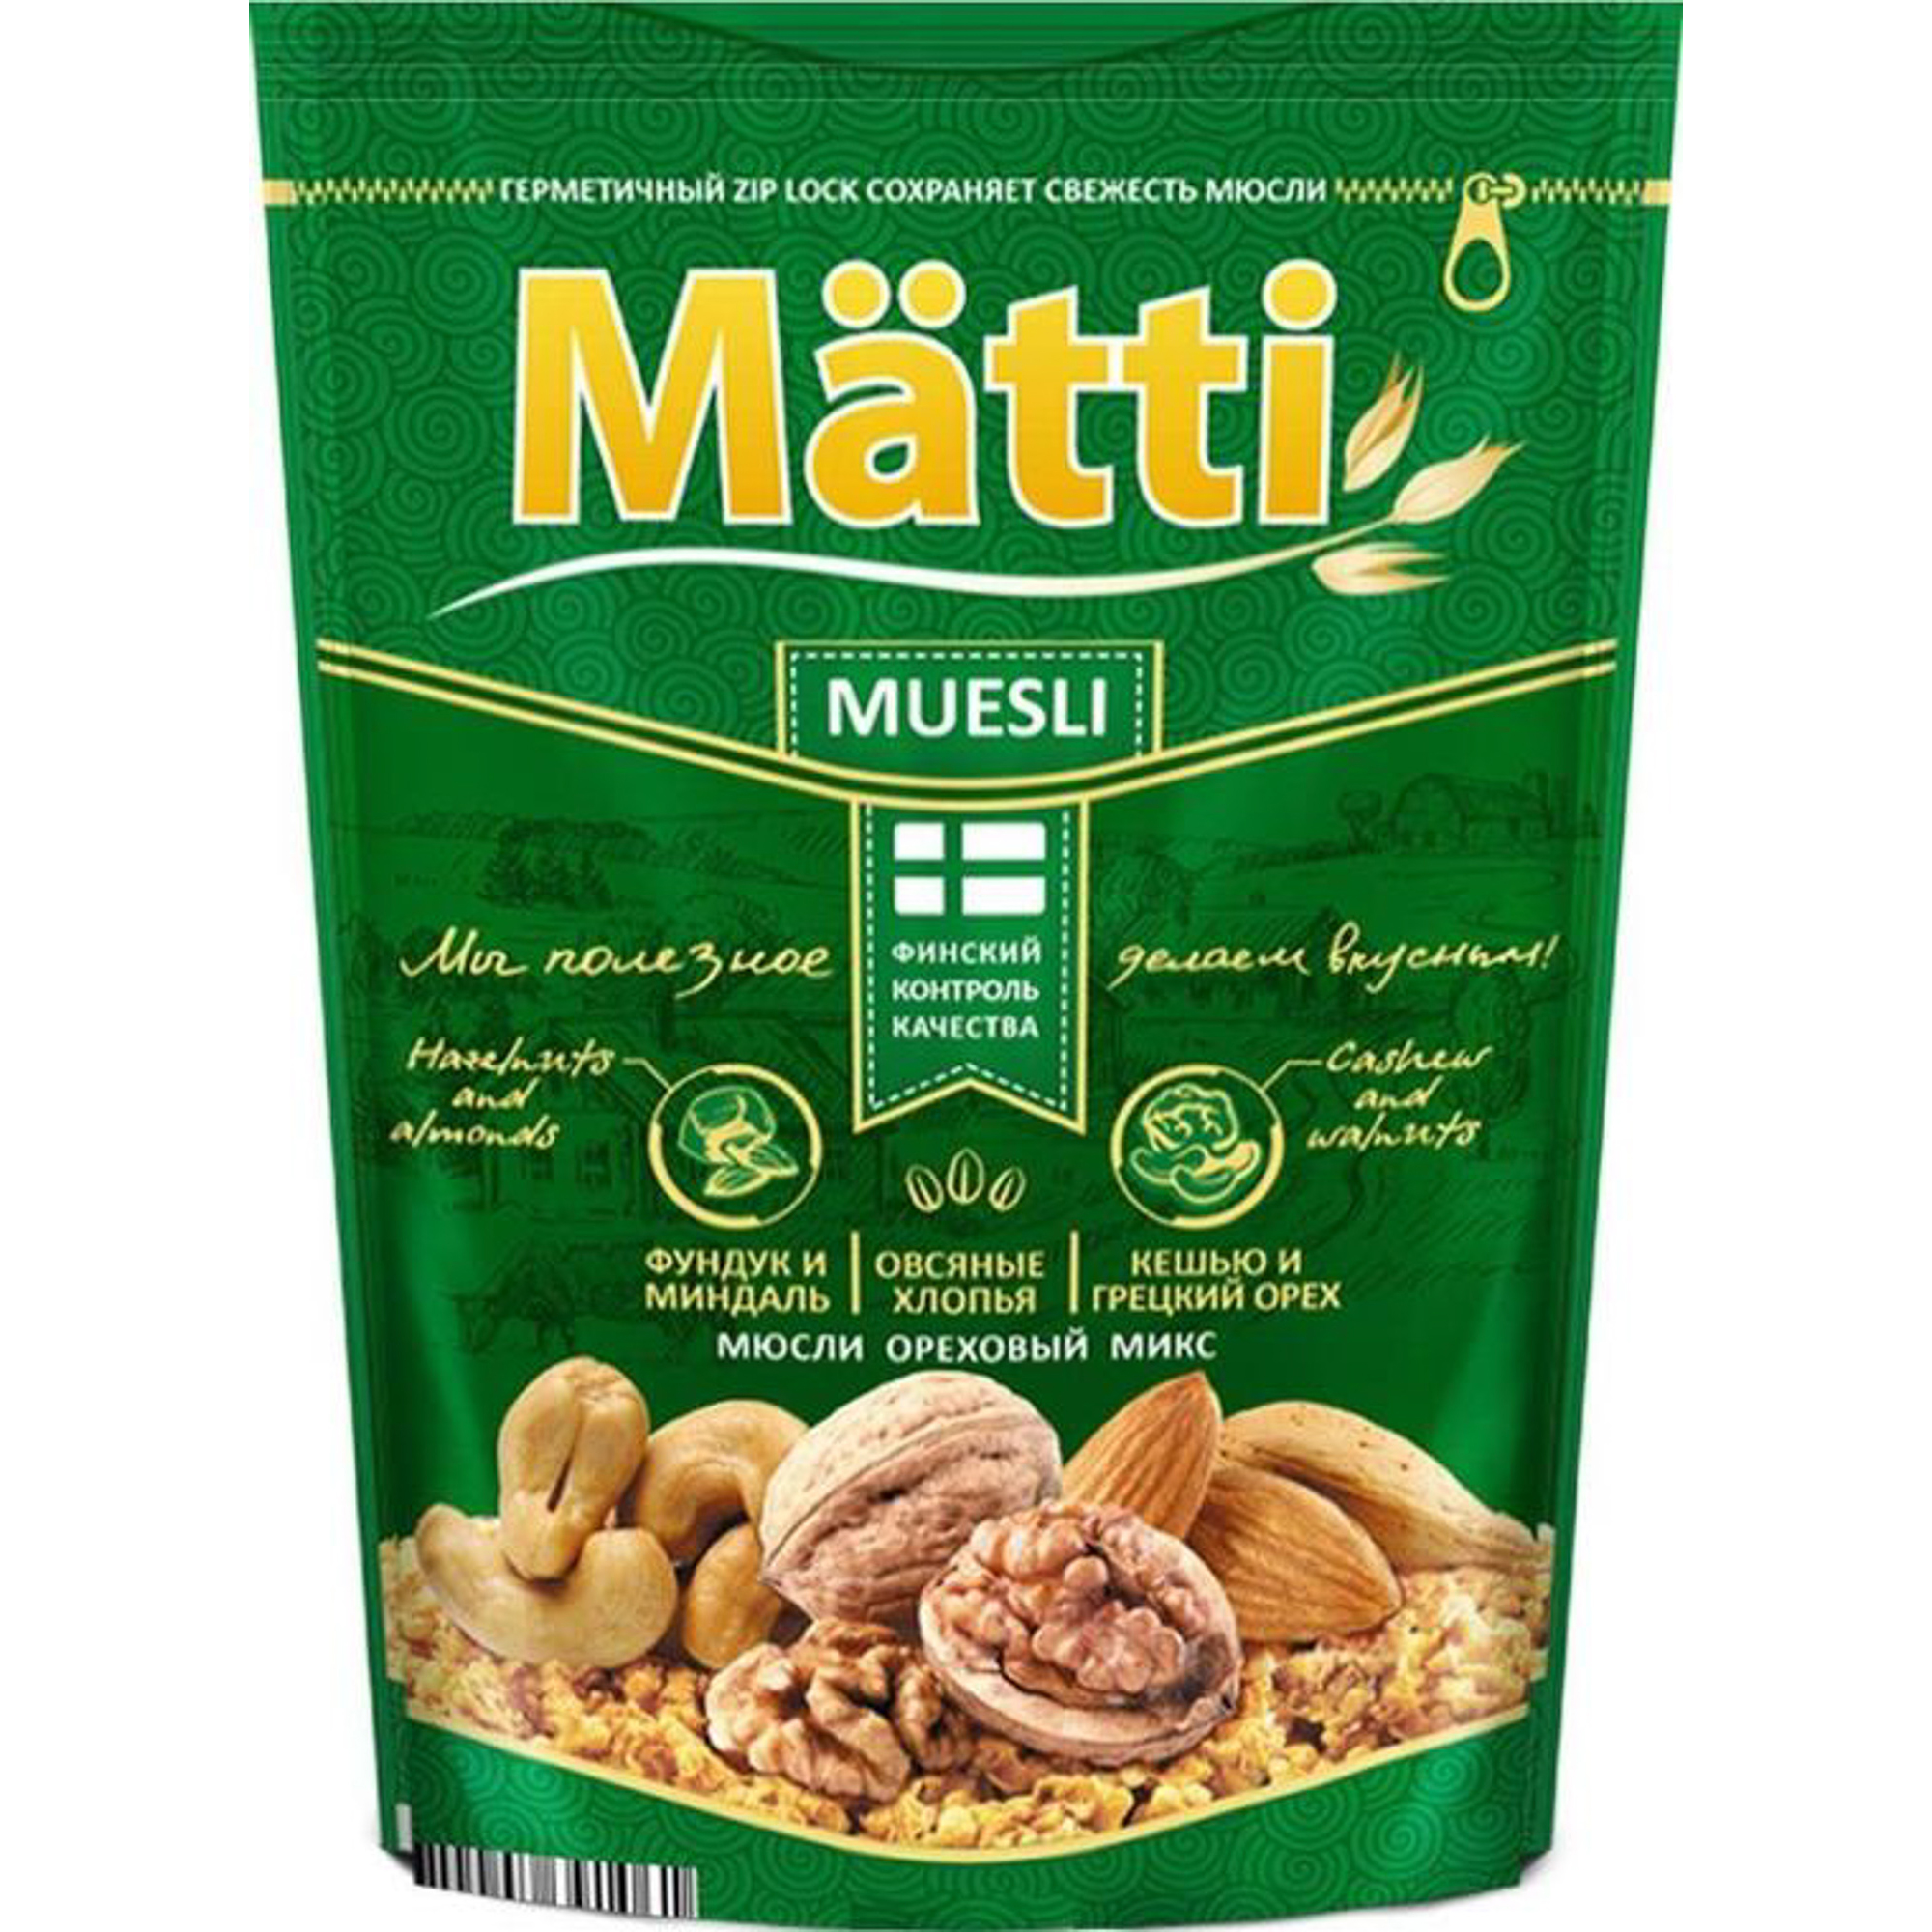 Мюсли Matti ореховый микс 250 г мюсли metro chef хрустящие с орехами 1 кг